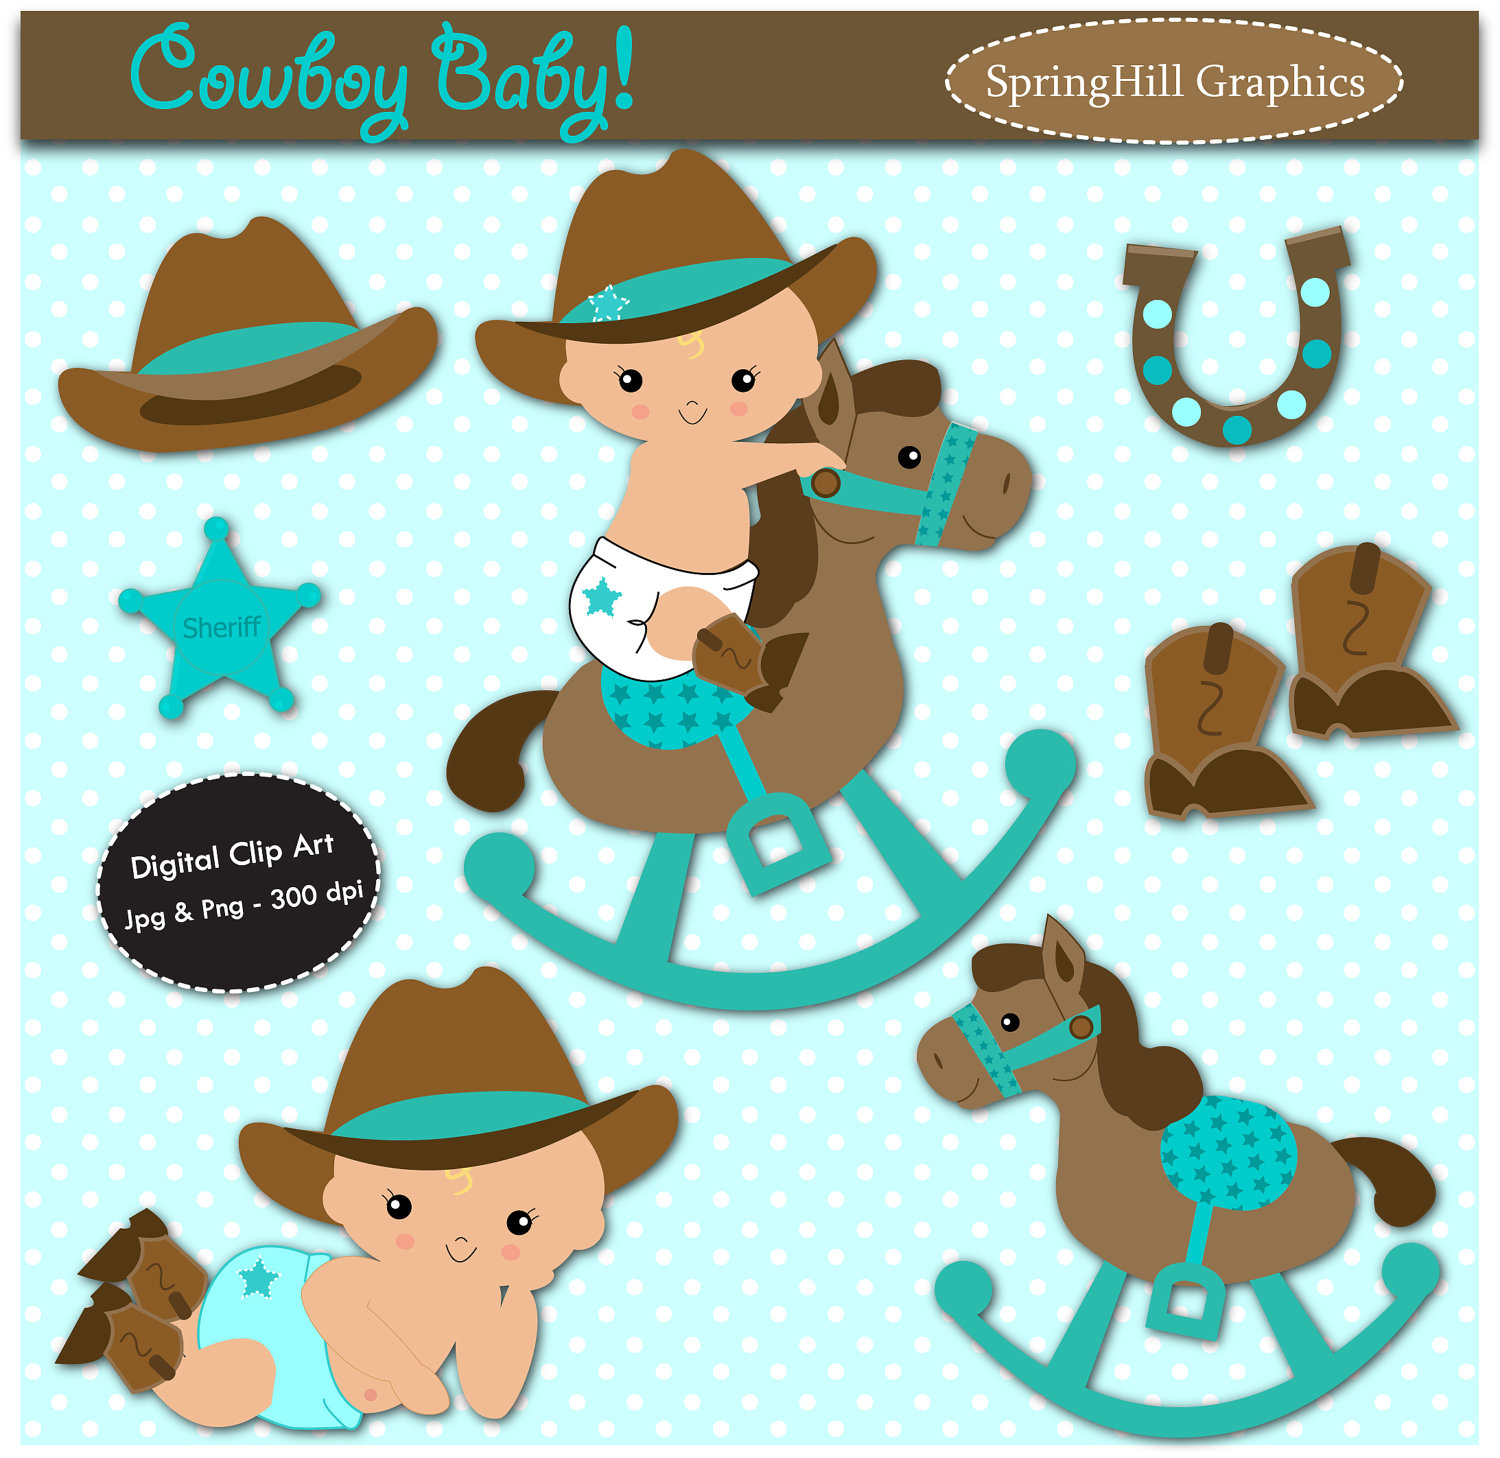 baby cowboy - Buscar con Goog